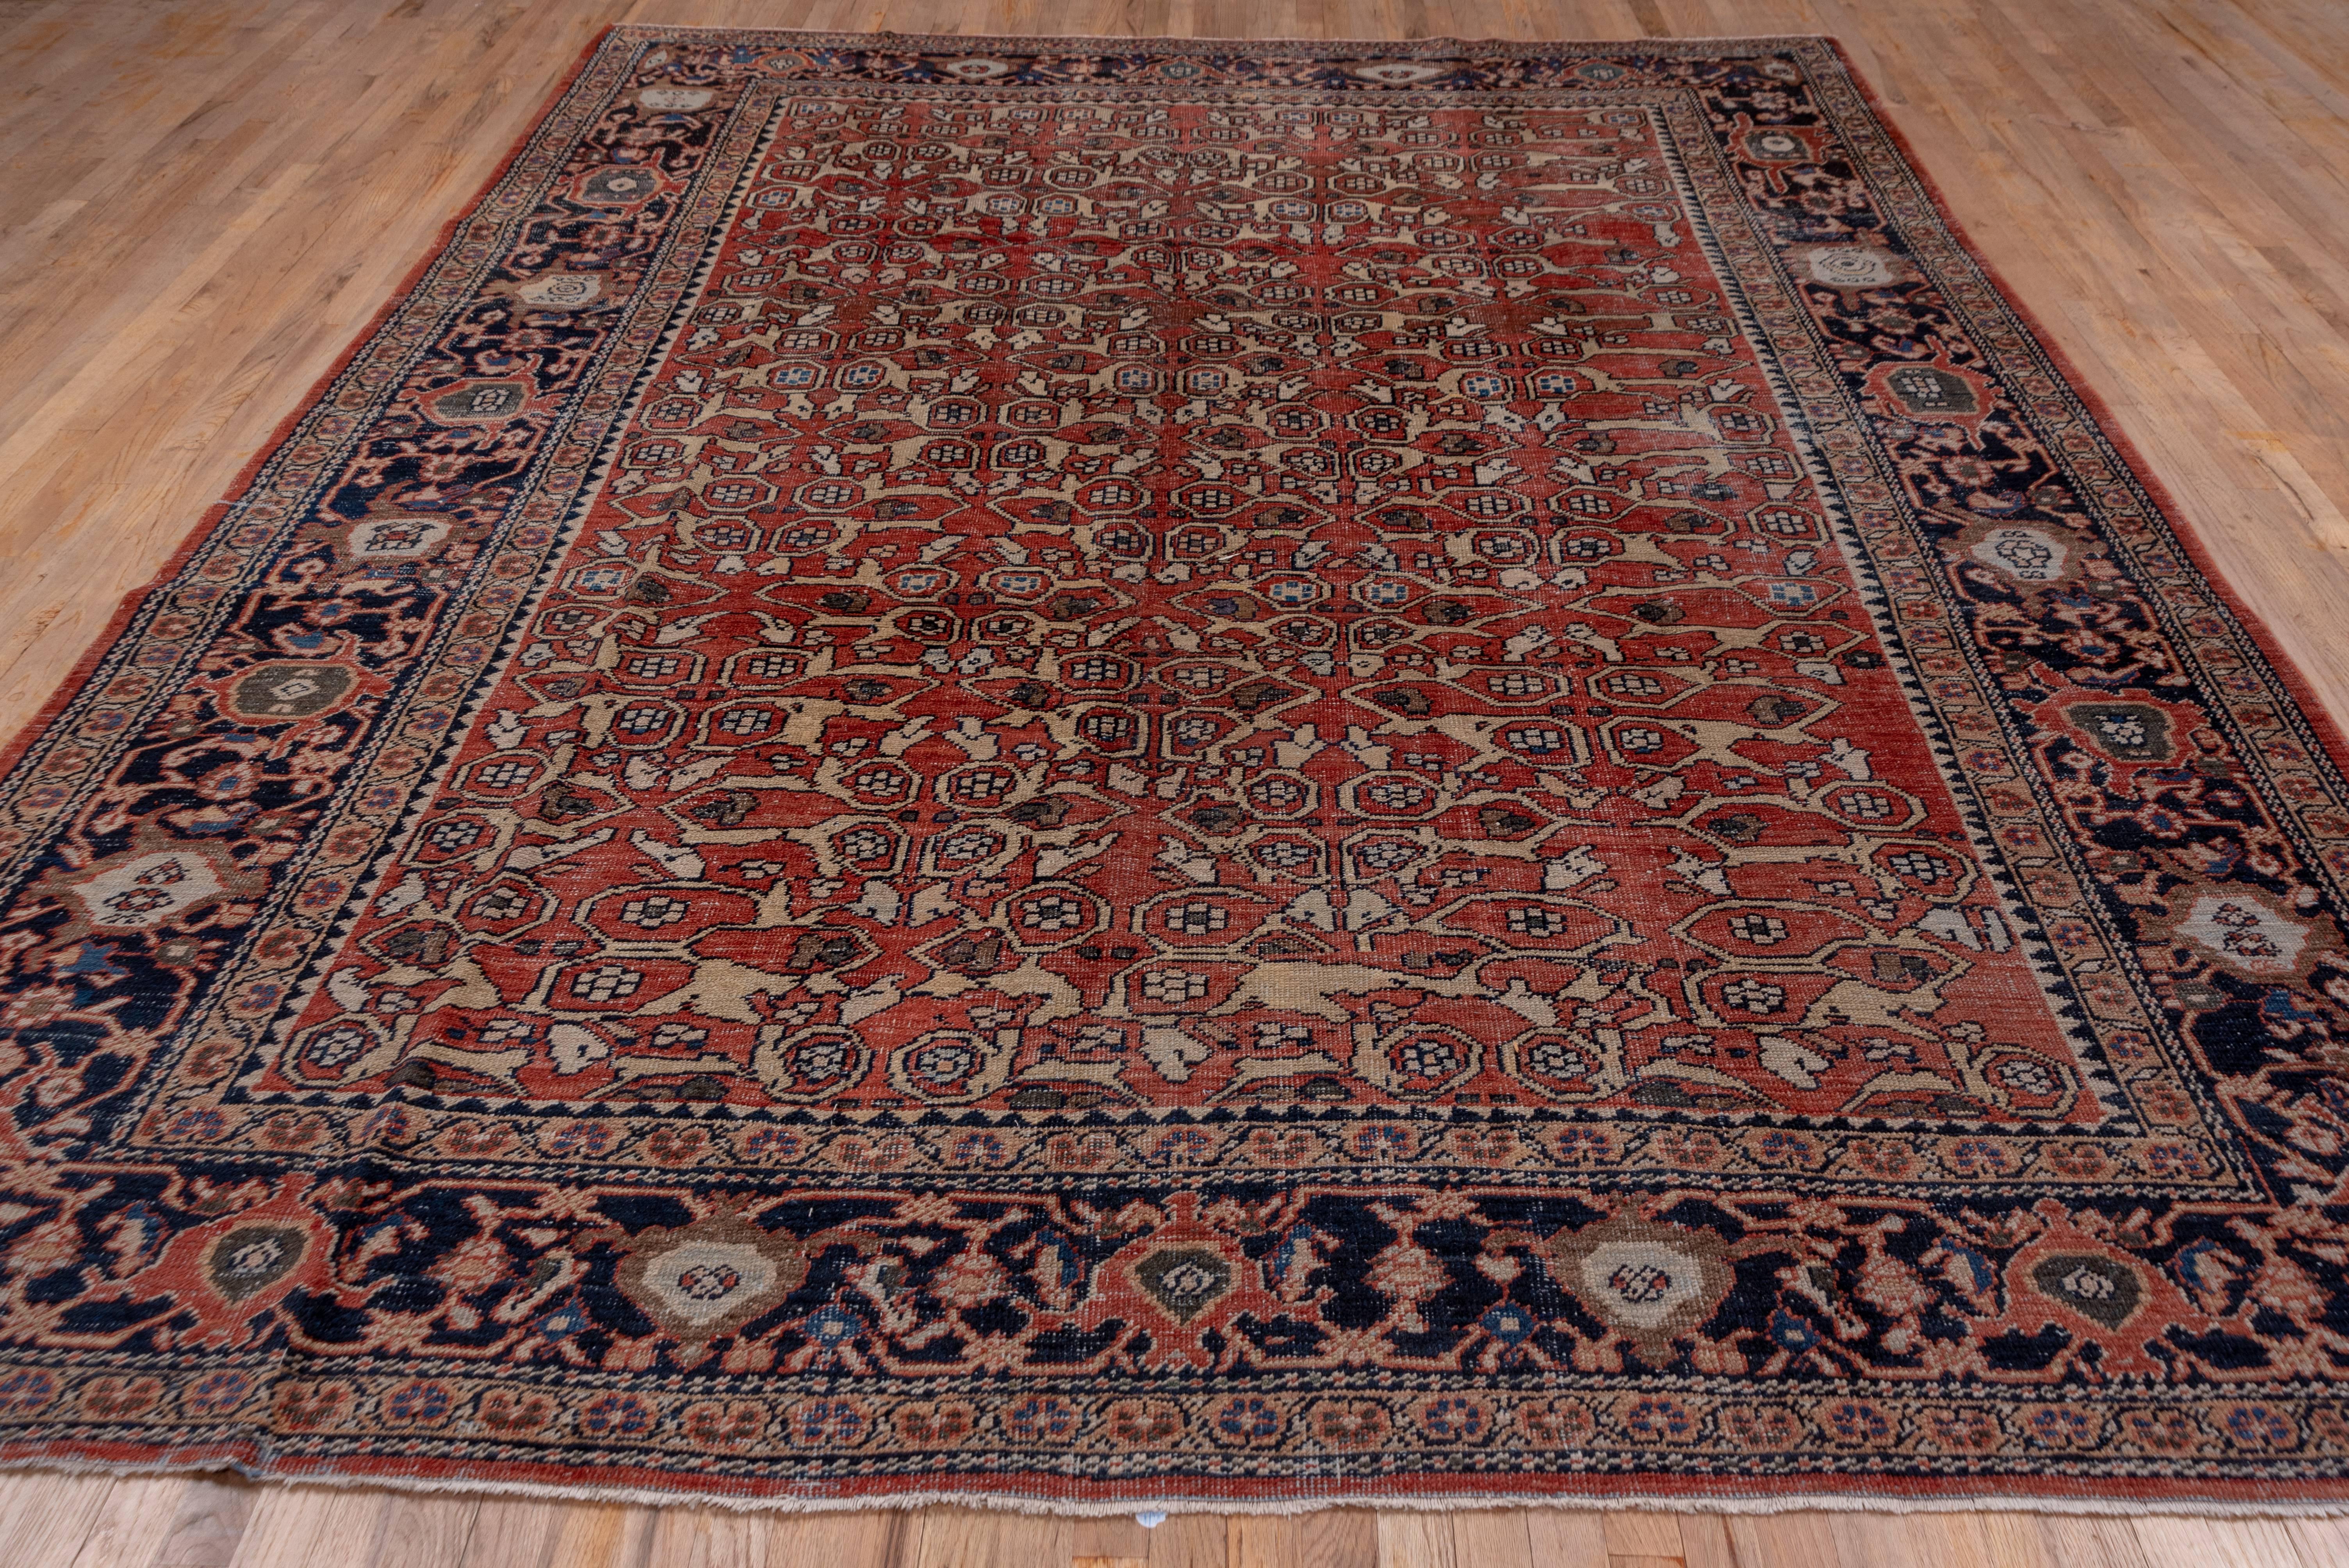 Tribal Antique Red Persian Mahal Carpet